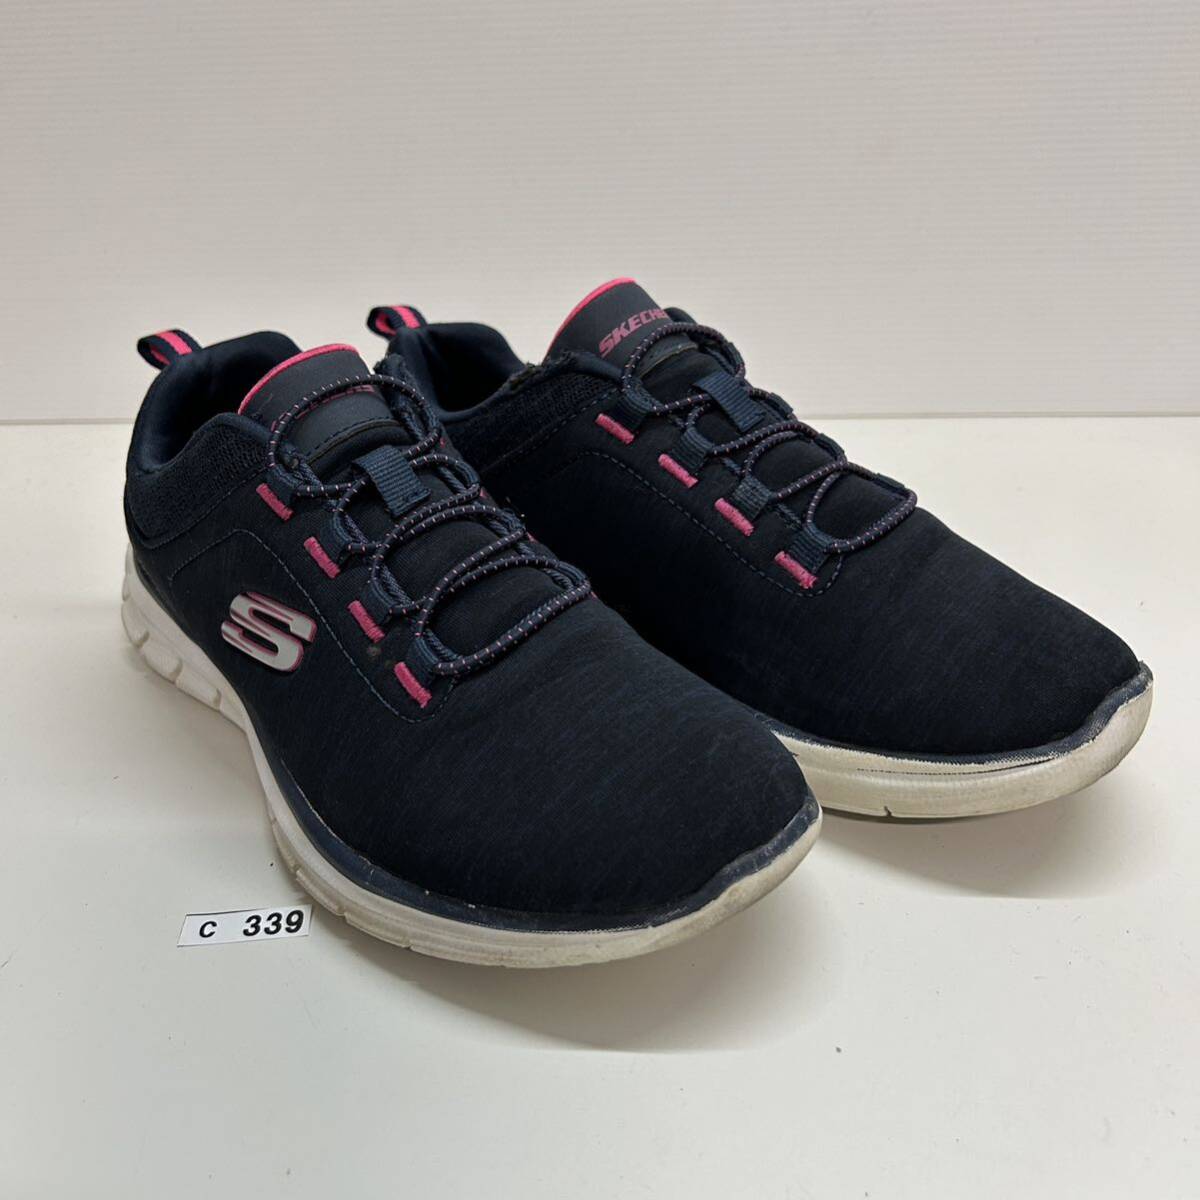 C339 SKECHERS Skechers lady's sneakers US6.5 23.5cm navy pink 